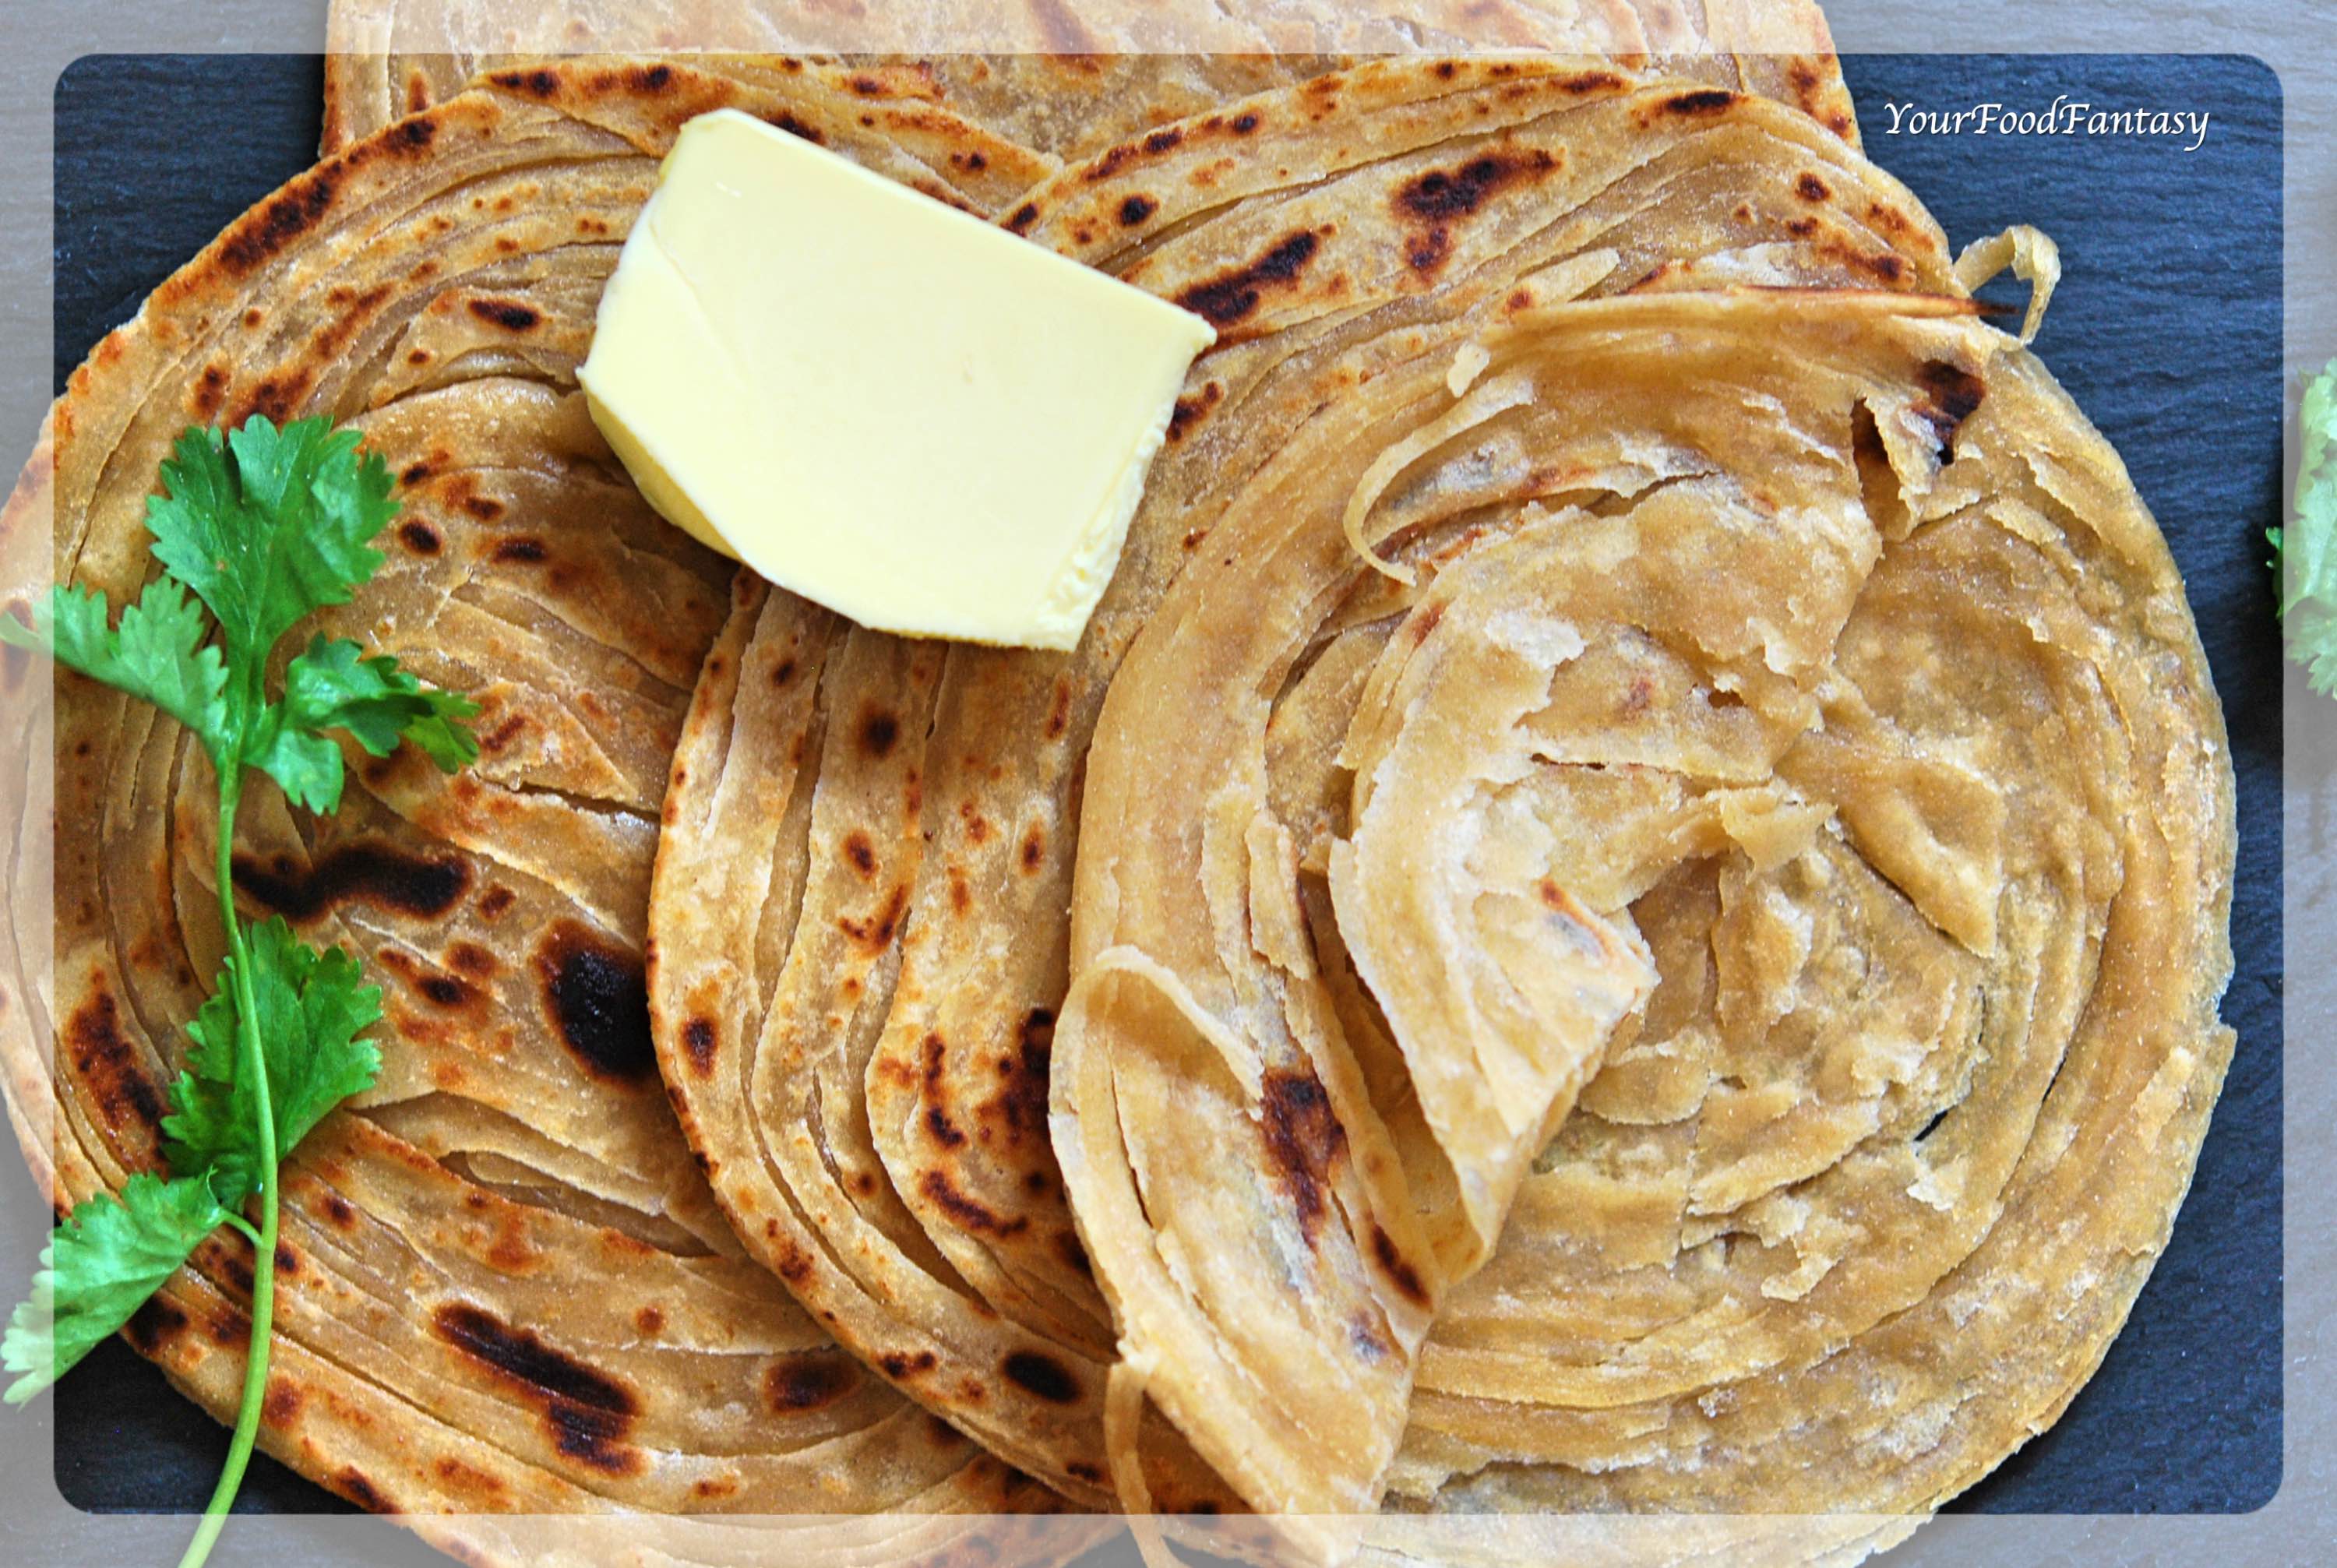 Layered Laccha Paratha | Malabar Paratha Recipe | Your Food Fantasy by Meenu Gupta